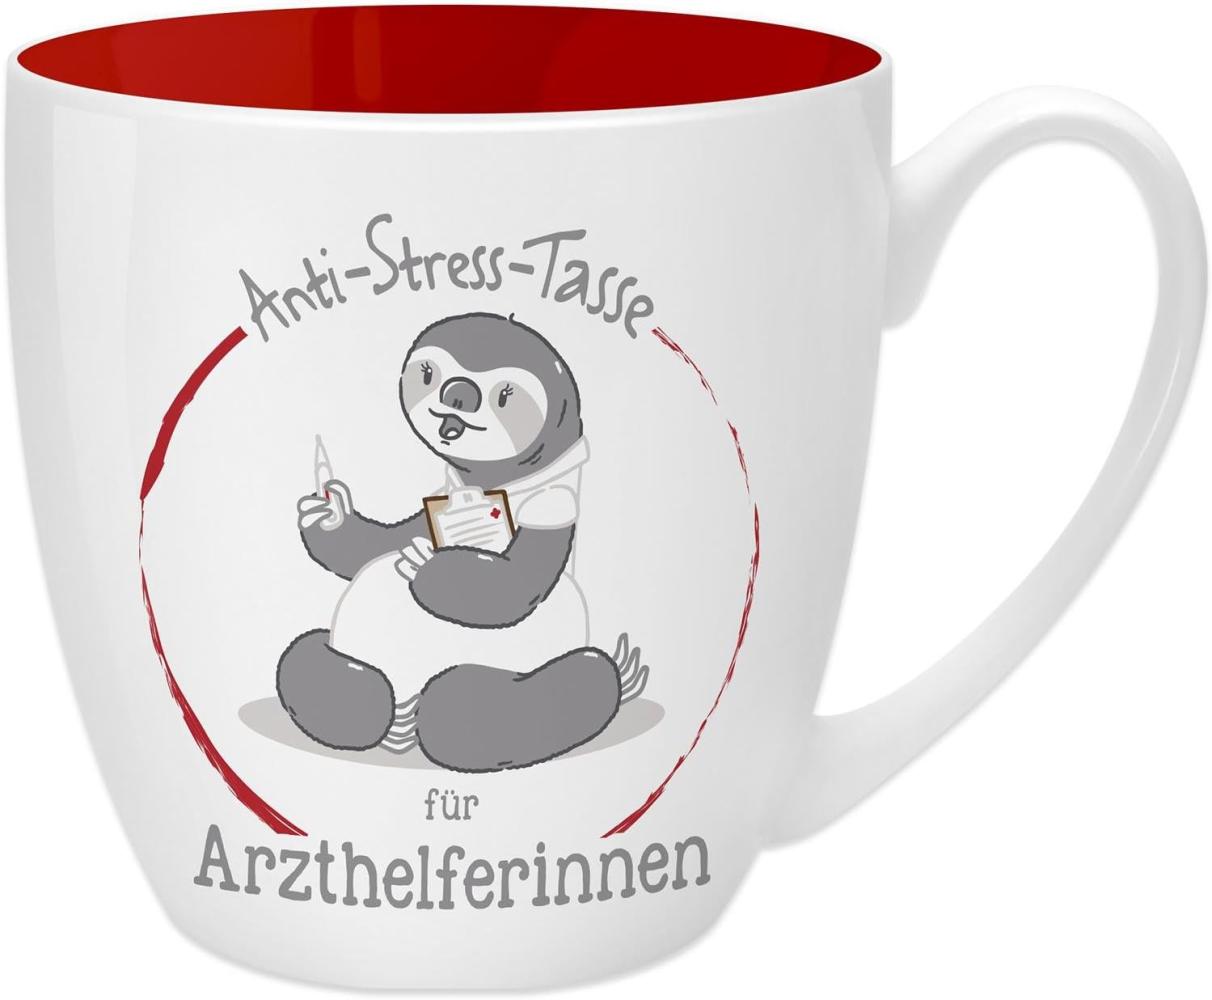 GRUSS & CO Anti-Stress-Tasse Motiv "Arzthelferinnen " | Tasse mit Spruch, 45 cl, New Bone China | Geschenk für Sie | 45484 Bild 1